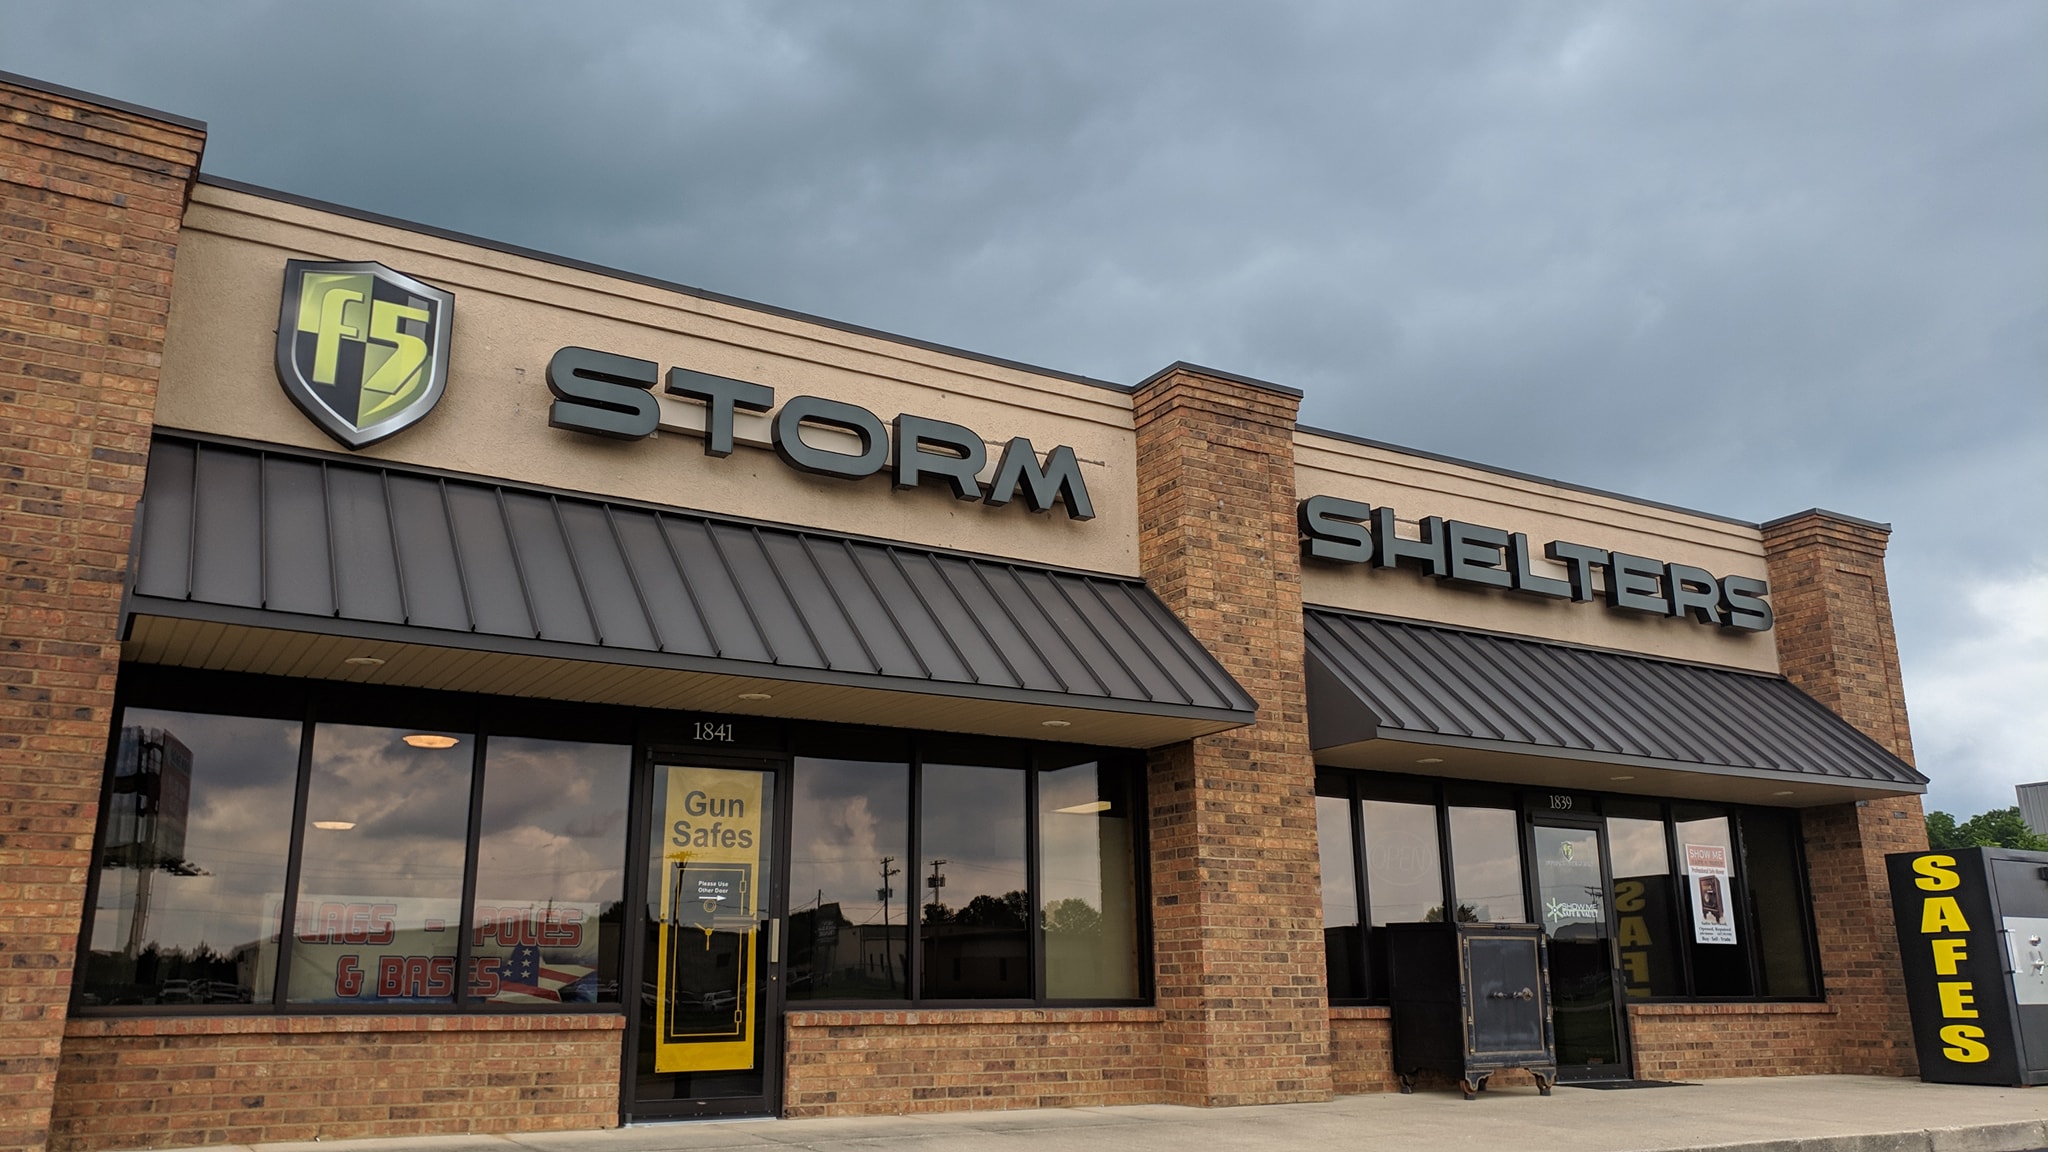 Tornado Safe Rooms & Storm Shelters 